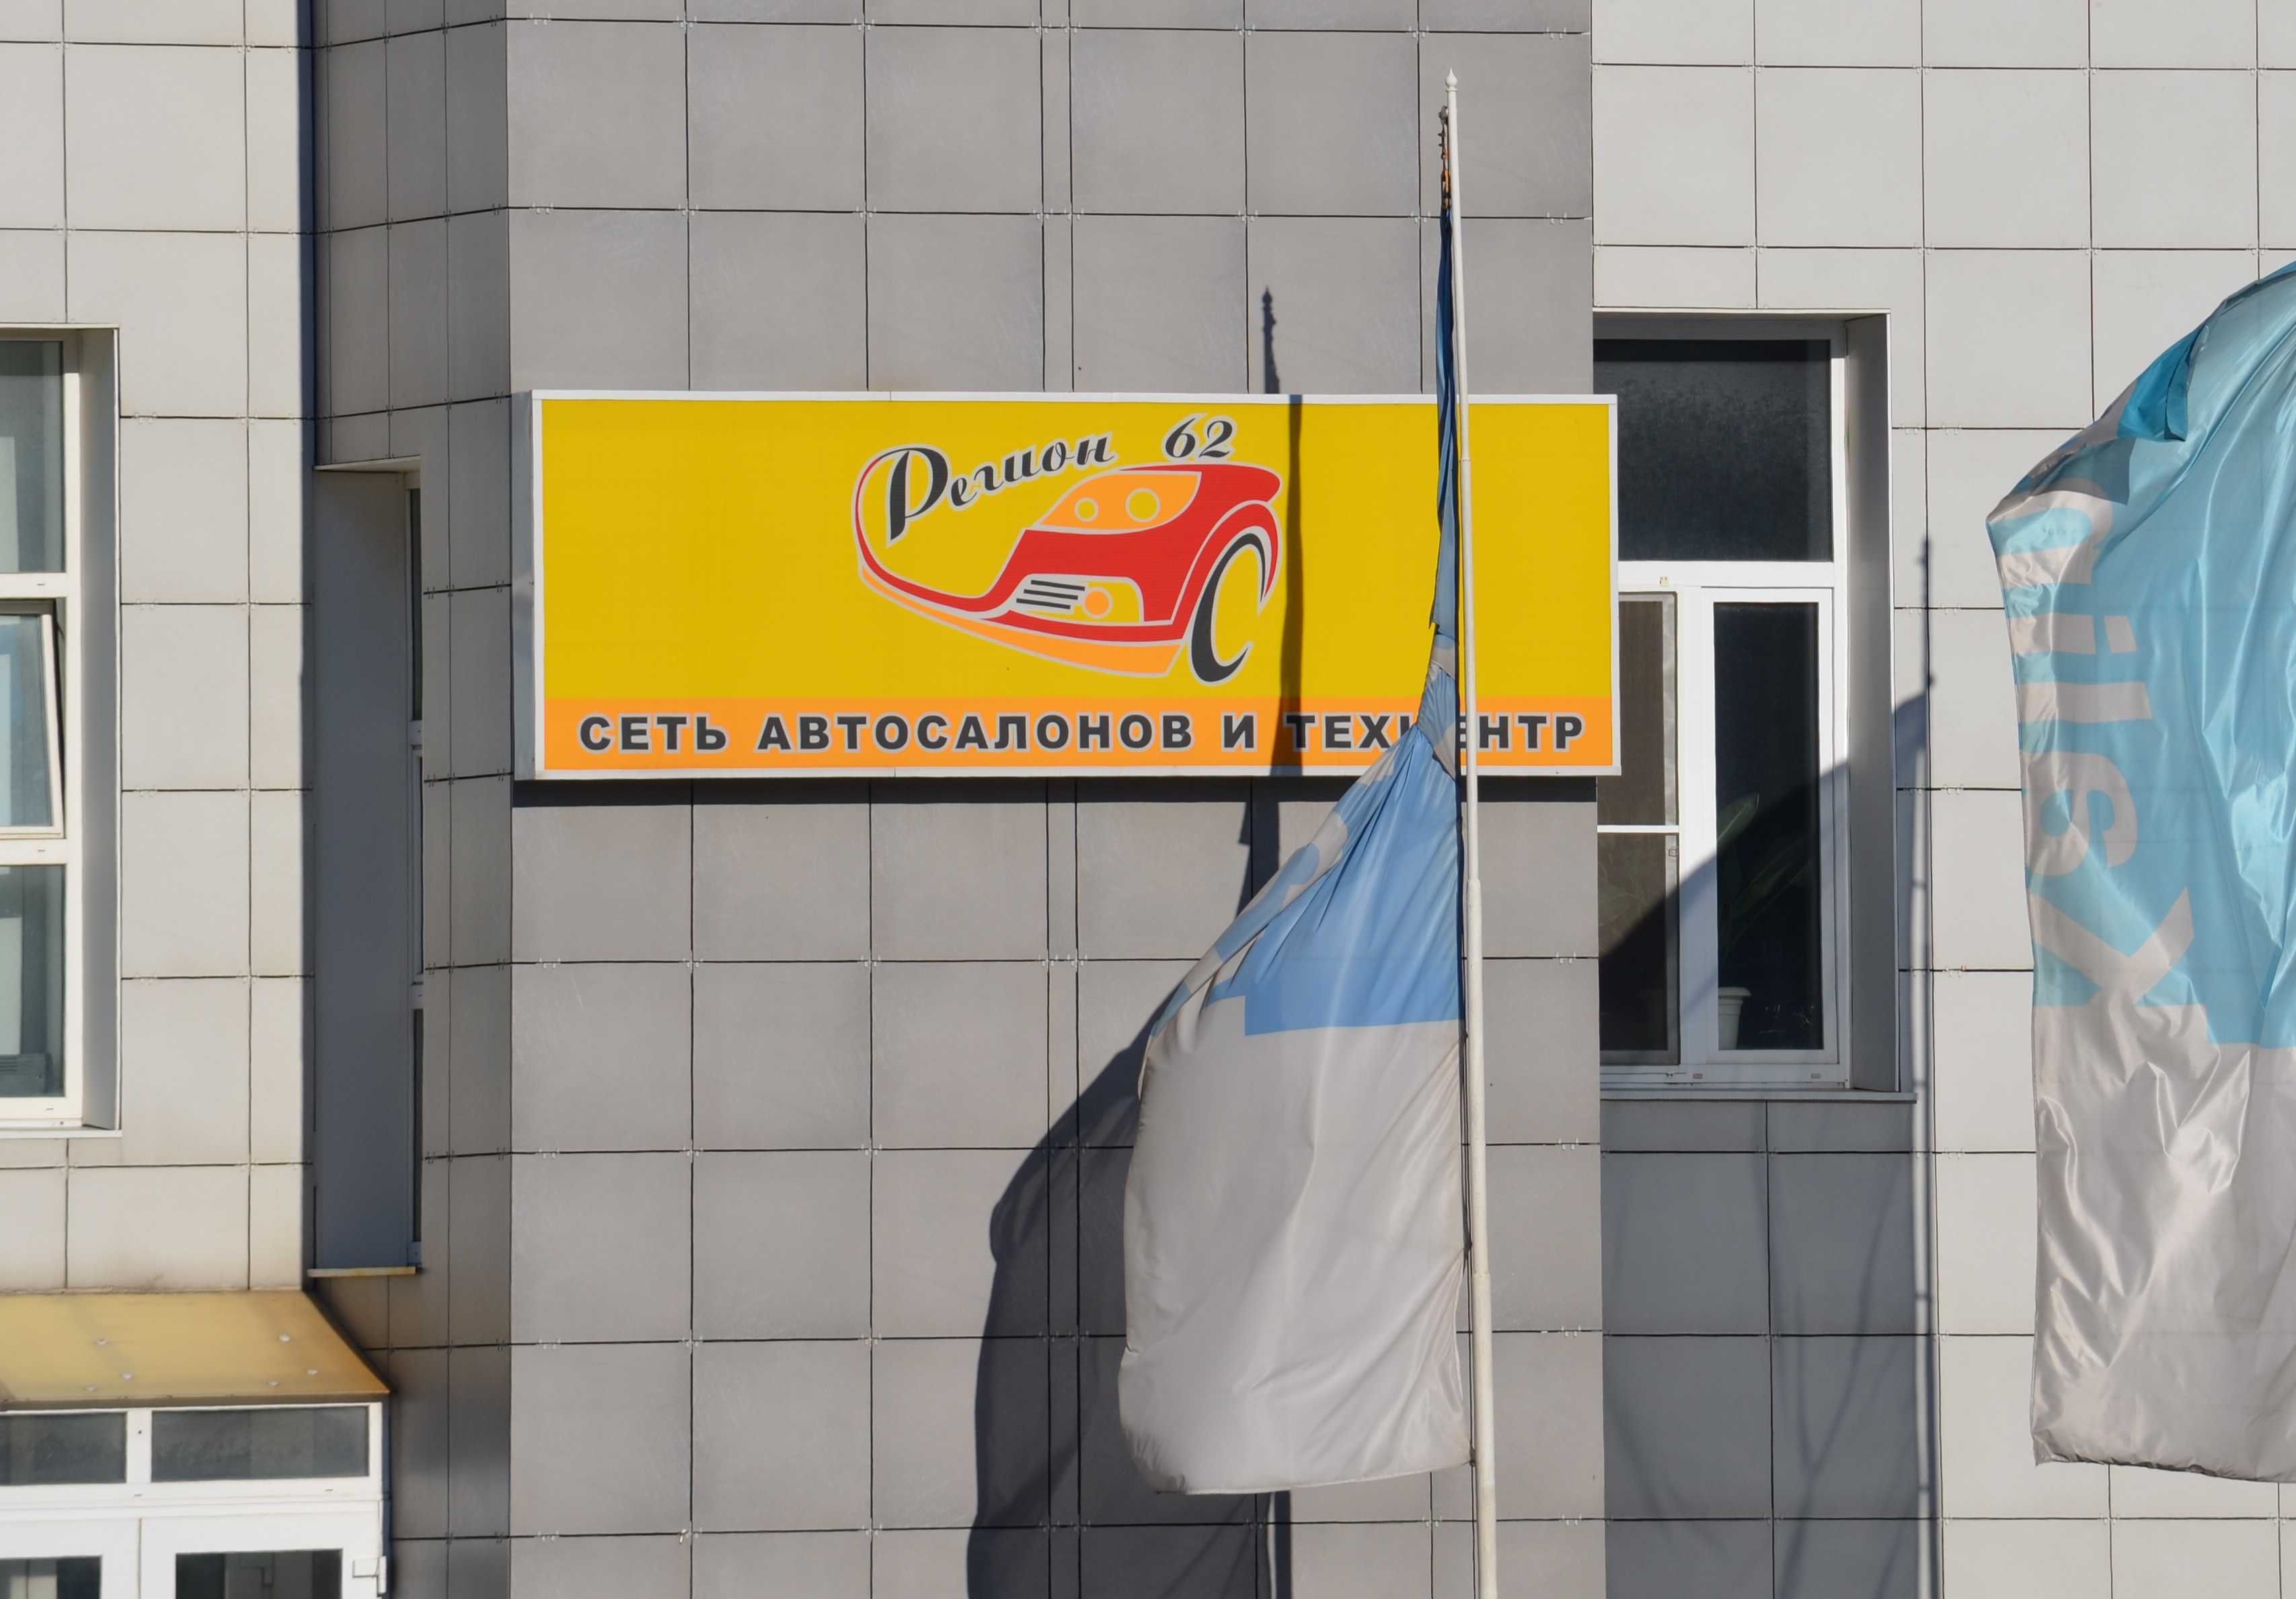 Автосалон «Регион 62» добился ареста имущества GM на 800 млн